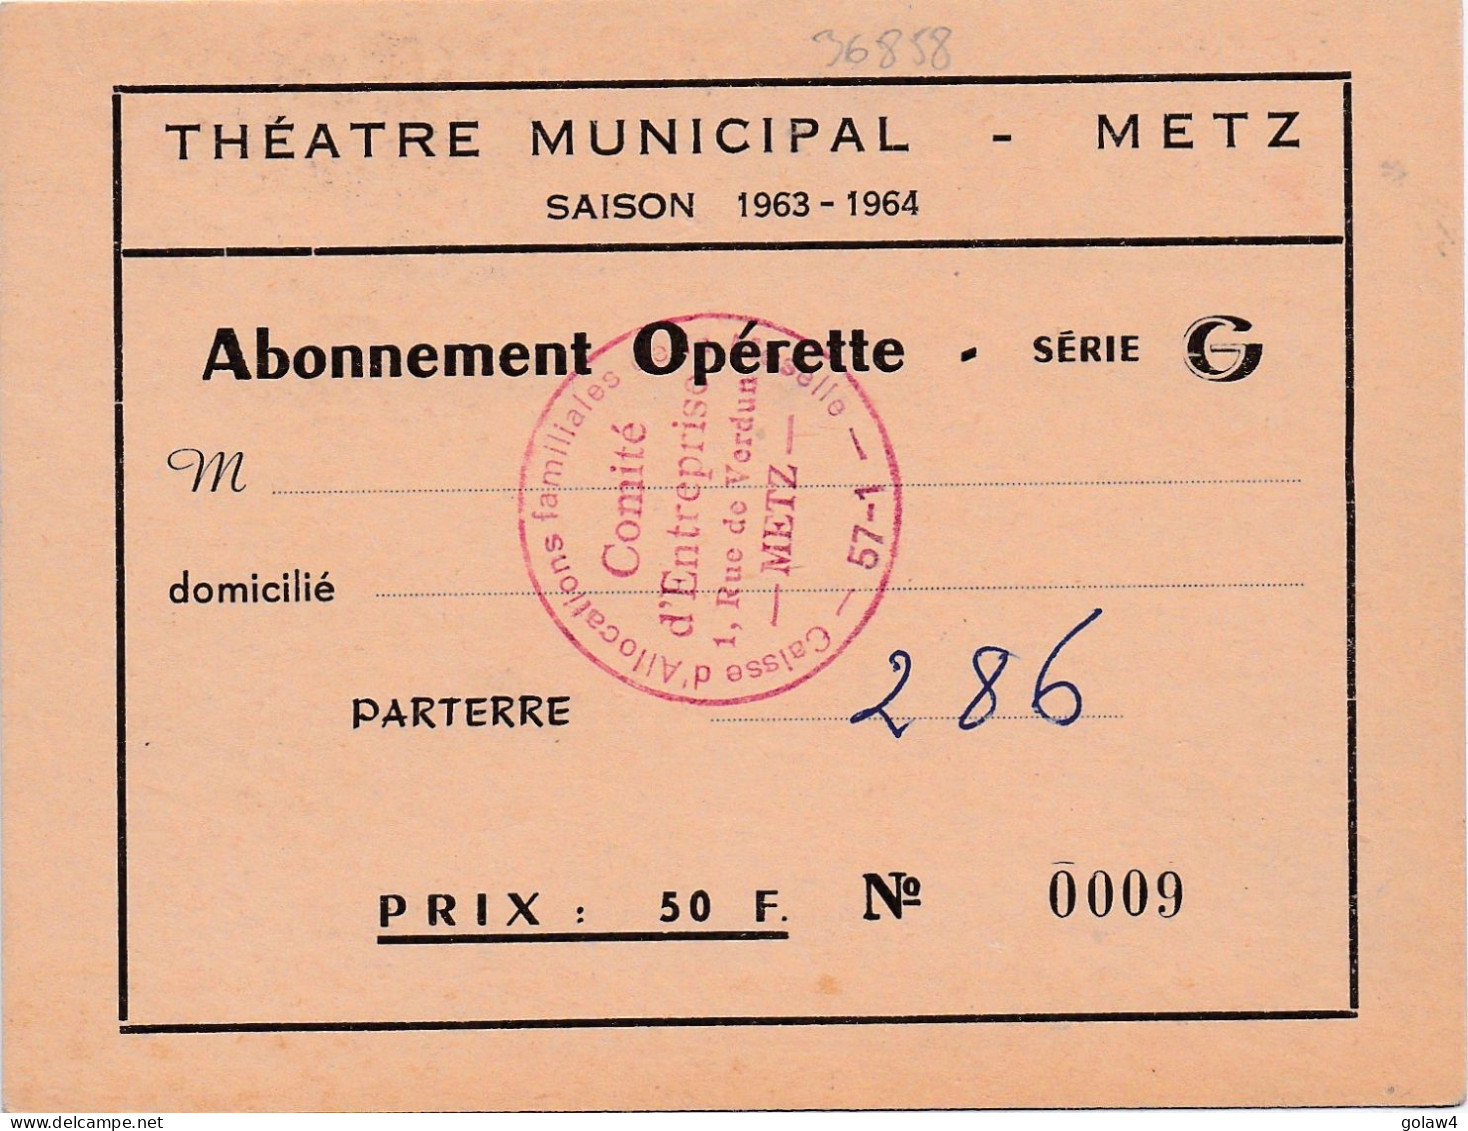 36858 THEATRE MUNICIPAL METZ SAISON 1963 1964 ABONNEMENT OPERETTE SERIE PARTERRE CAISSE ALLOCATIONS FAMILIALLES MOSELLE - Tickets - Vouchers